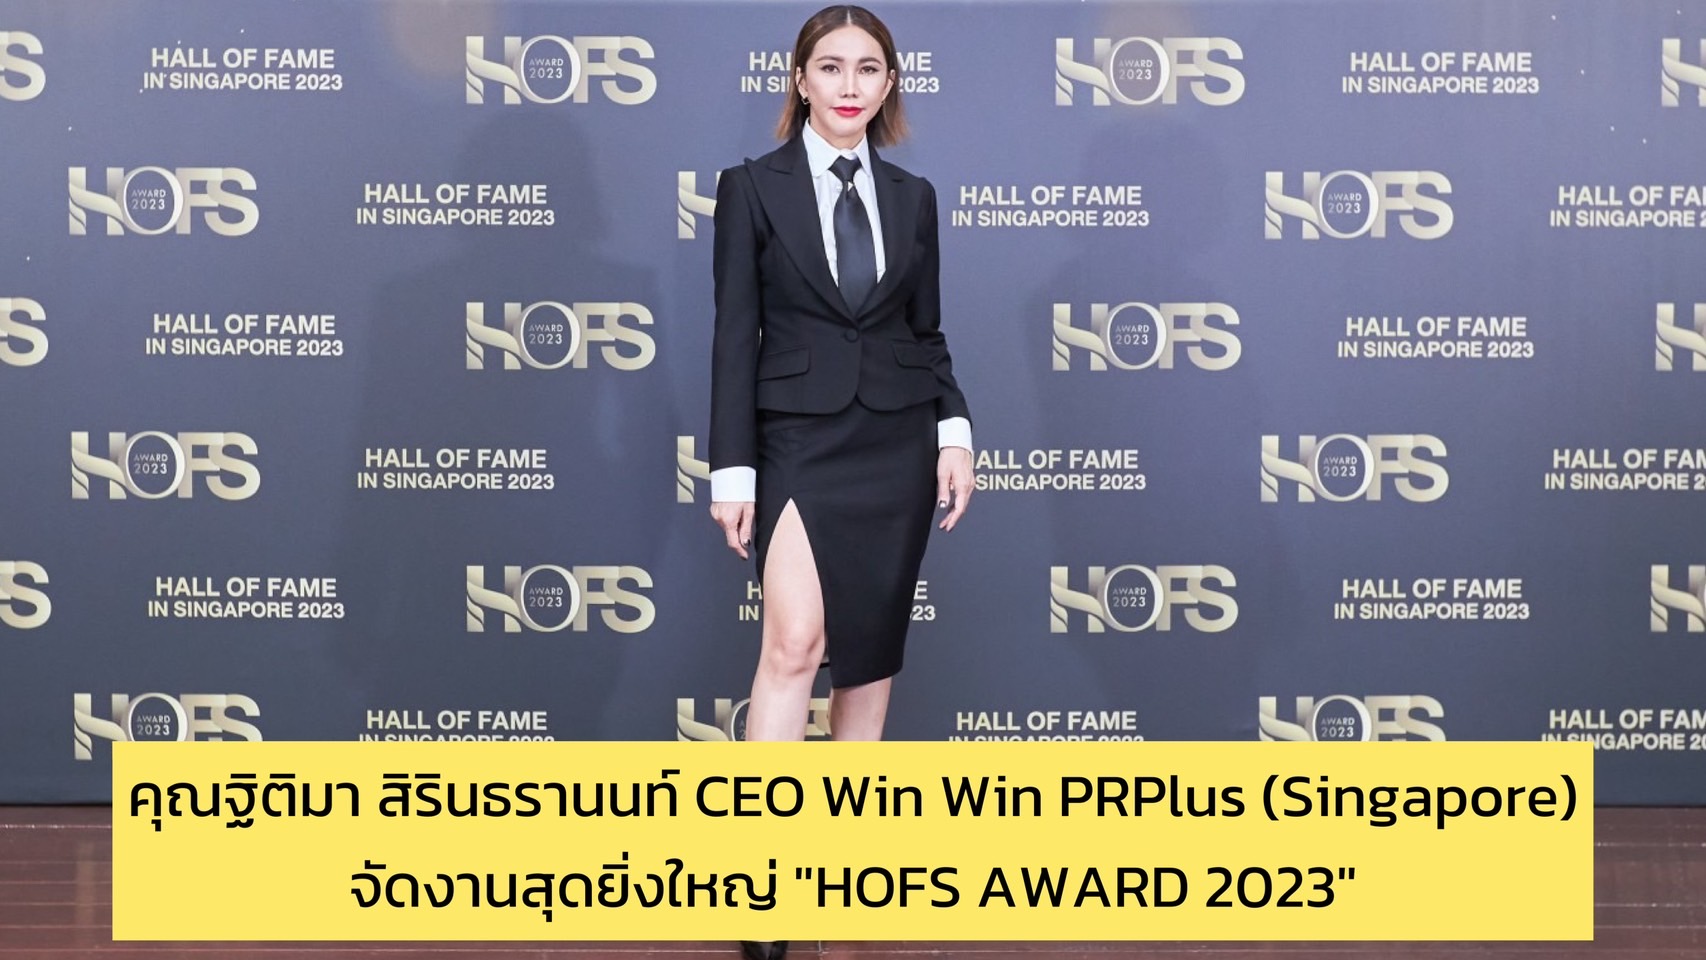 คุณฐิติมา สิรินธรานนท์ CEO Win Win PRPlus (Singapore) จัดงานสุดยิ่งใหญ่ “HOFS AWARD 2023” นักธุรกิจไทย-เซเลบ-คนดัง หลากหลายประเทศ บินมาร่วมงานเพียบ